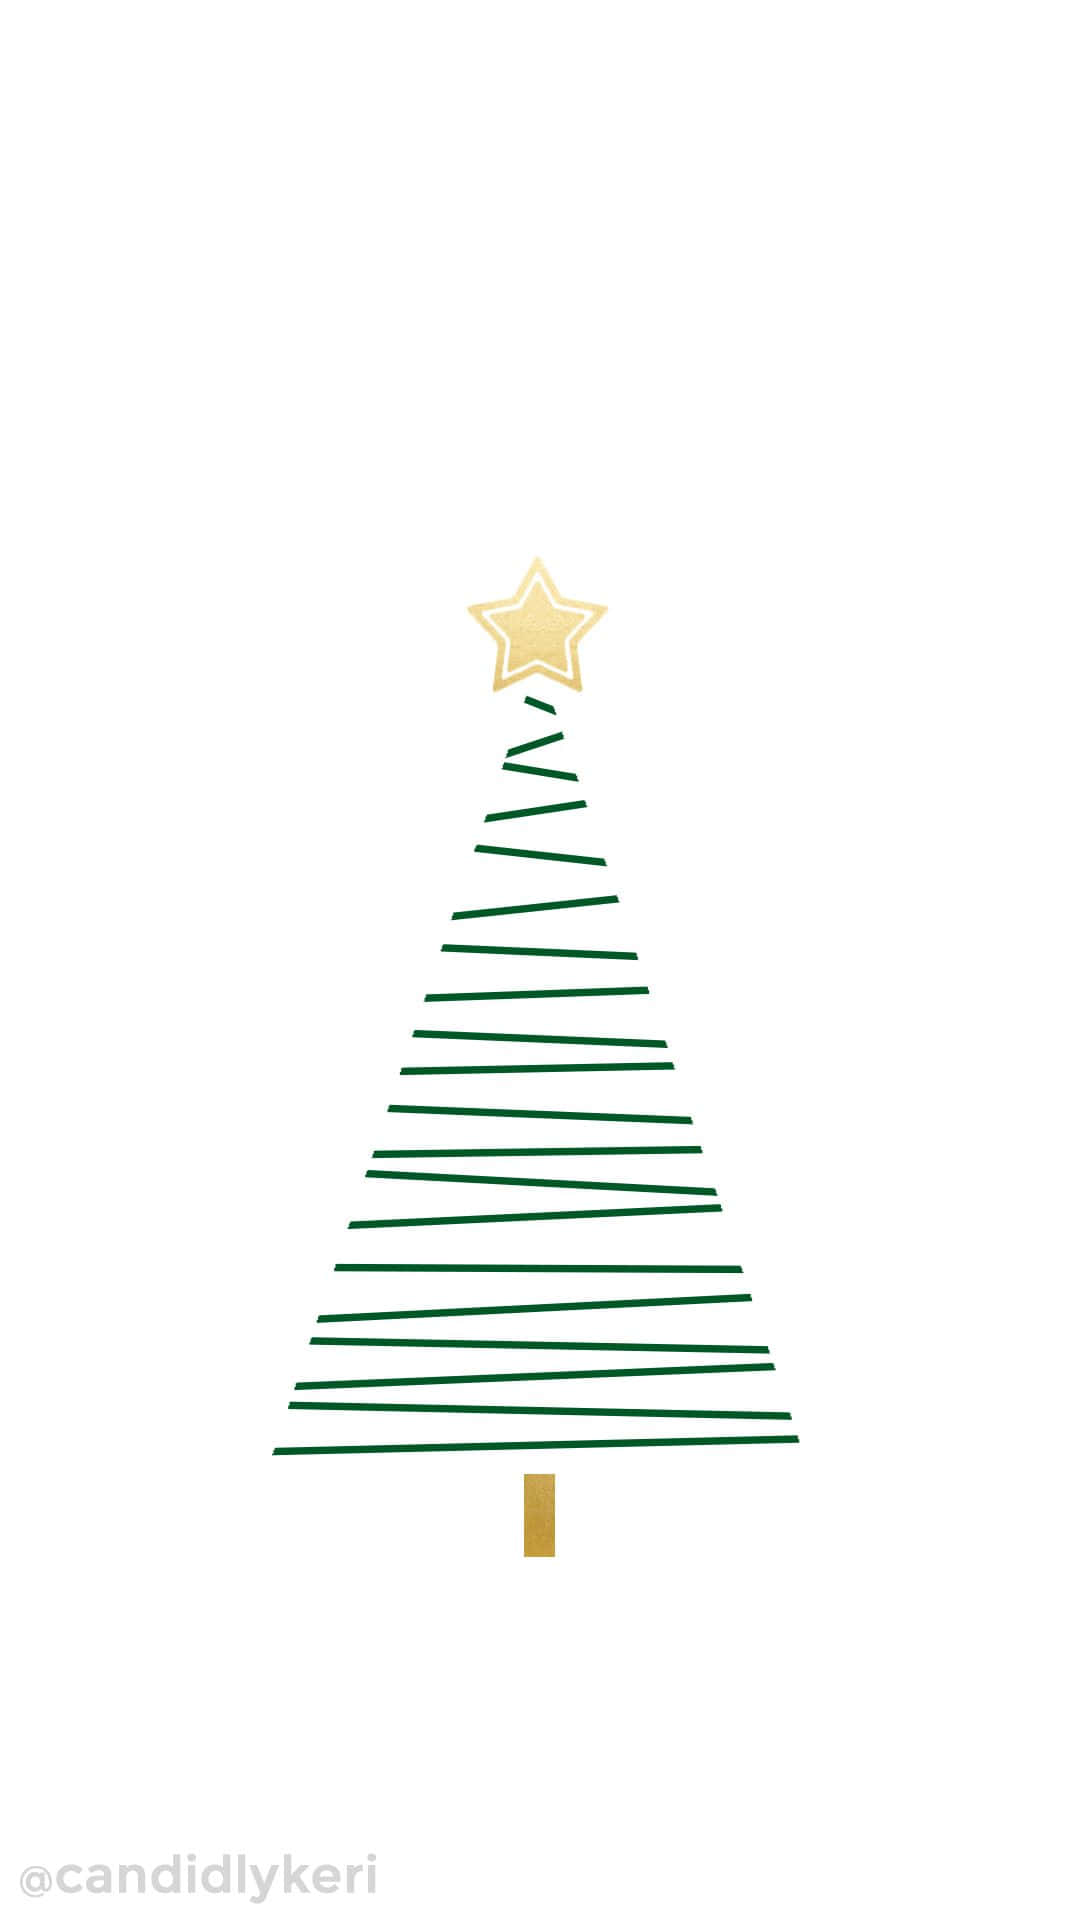 Feiernsie Die Fröhlichkeit Und Freude Der Festtagszeit Mit Einem Niedlichen Weihnachtsbaum! Wallpaper